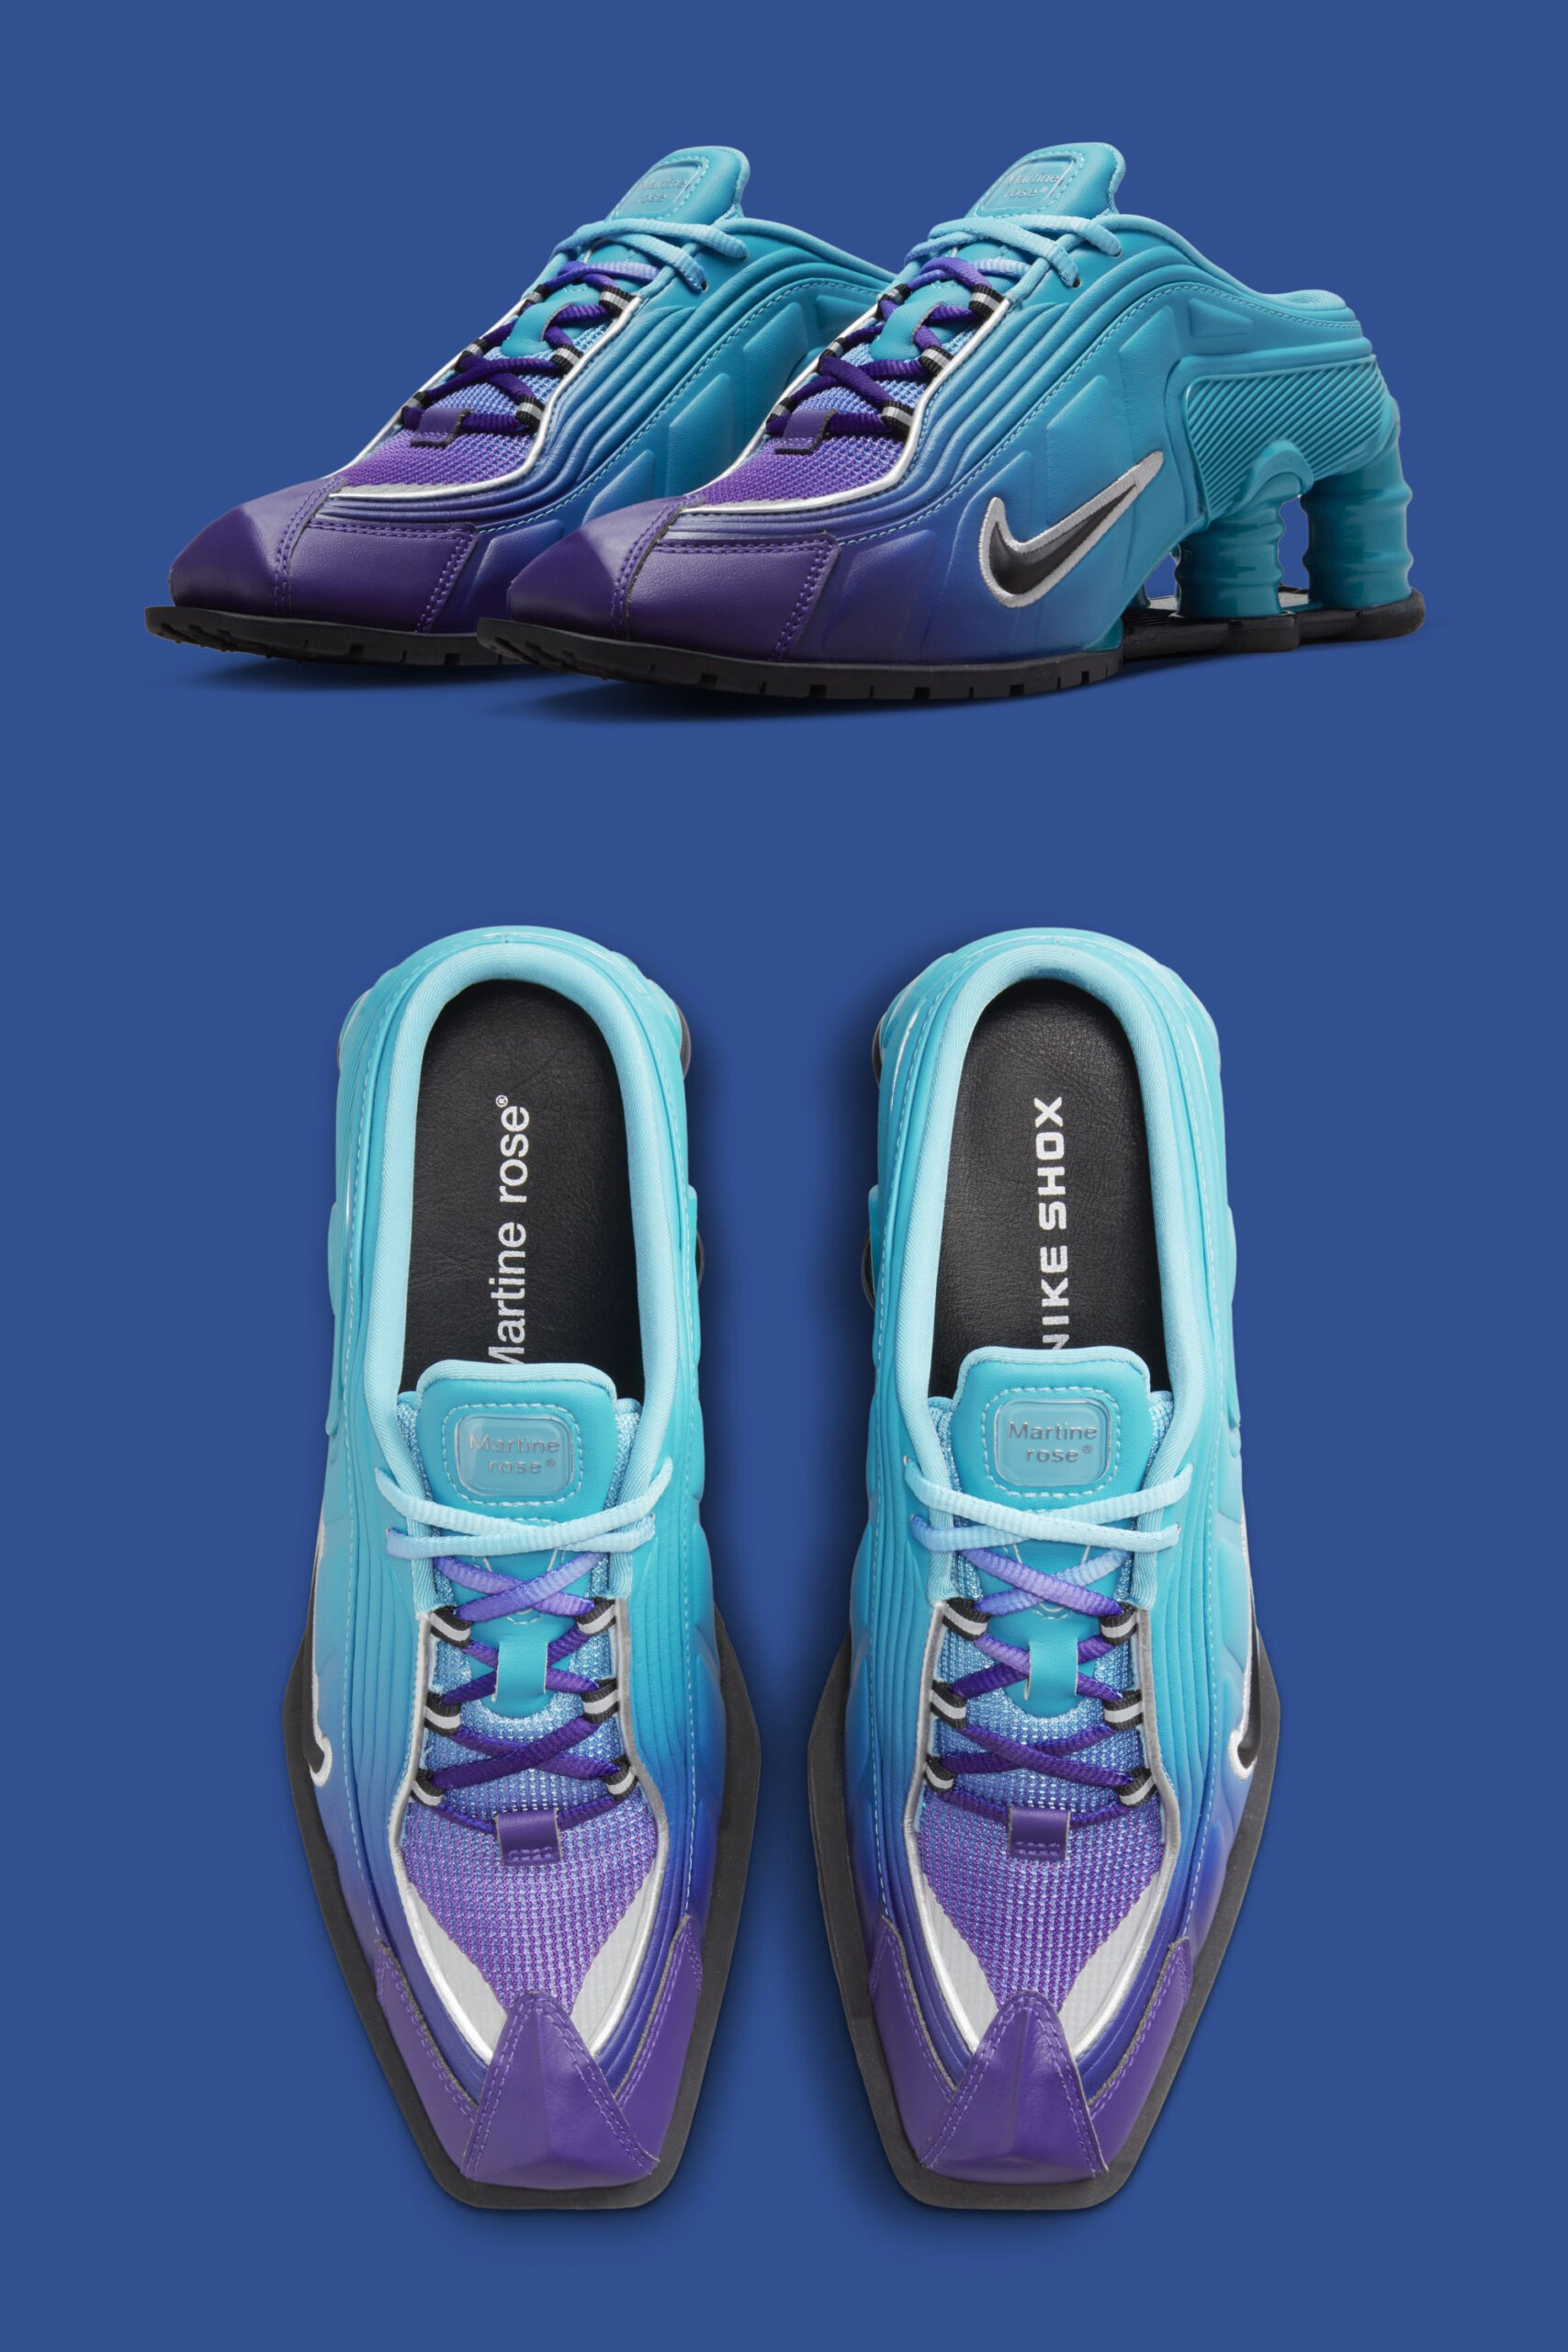 Martine Rose x Nike Shox MR4 – Scuba Blue | sneakerb0b RELEASES